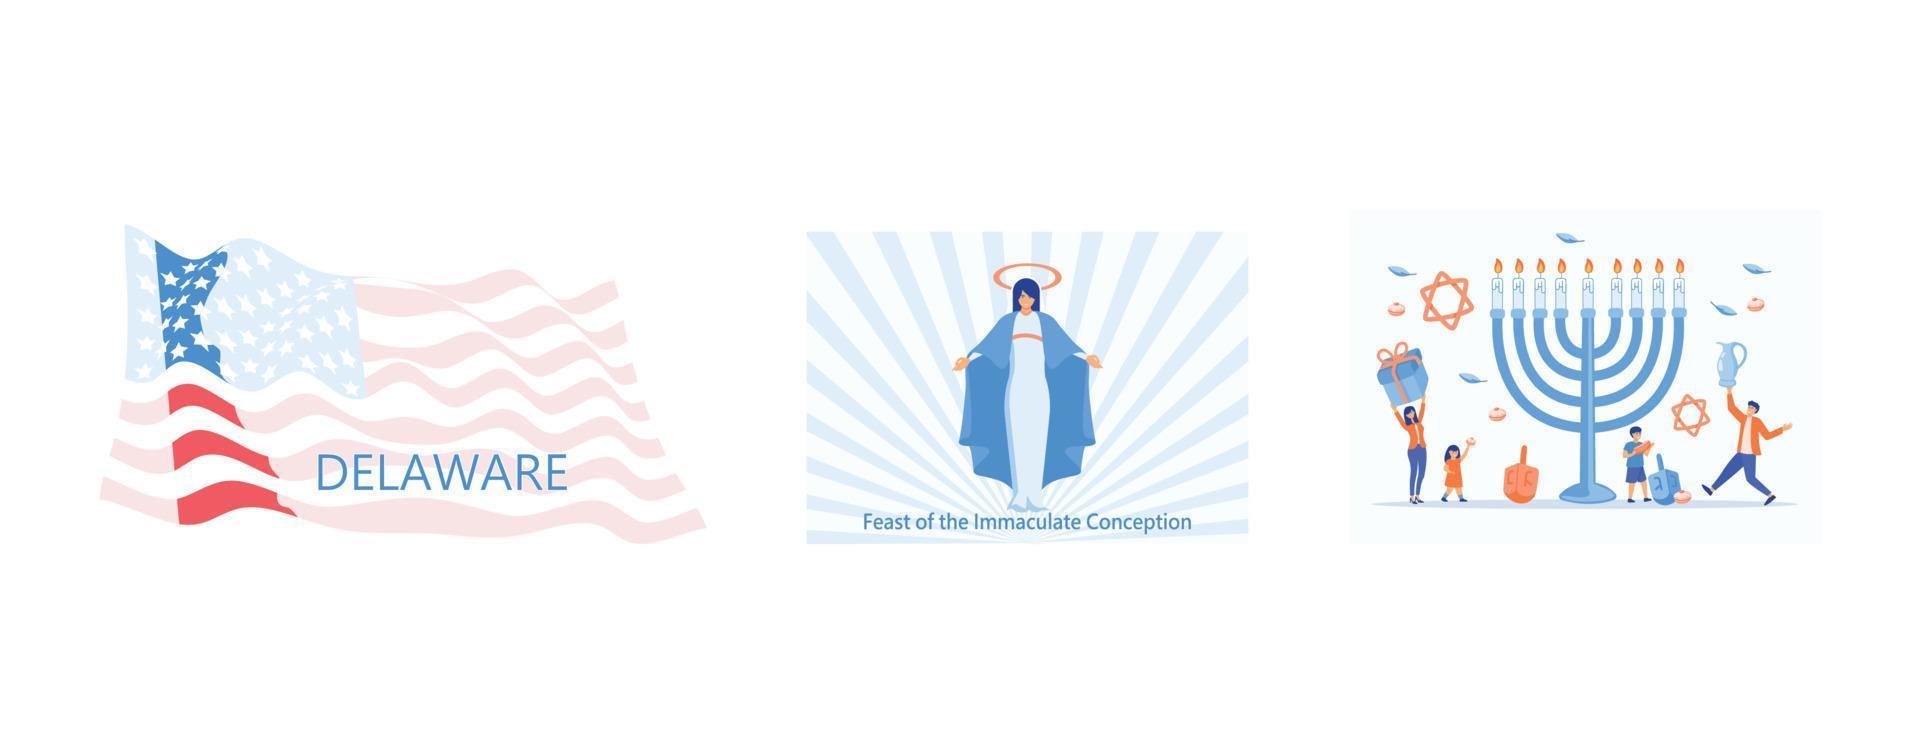 form av delaware stat Karta med amerikan flagga, fest av de obefläckad uppfattning vektor, Lycklig Hanukkah, uppsättning platt vektor modern illustration